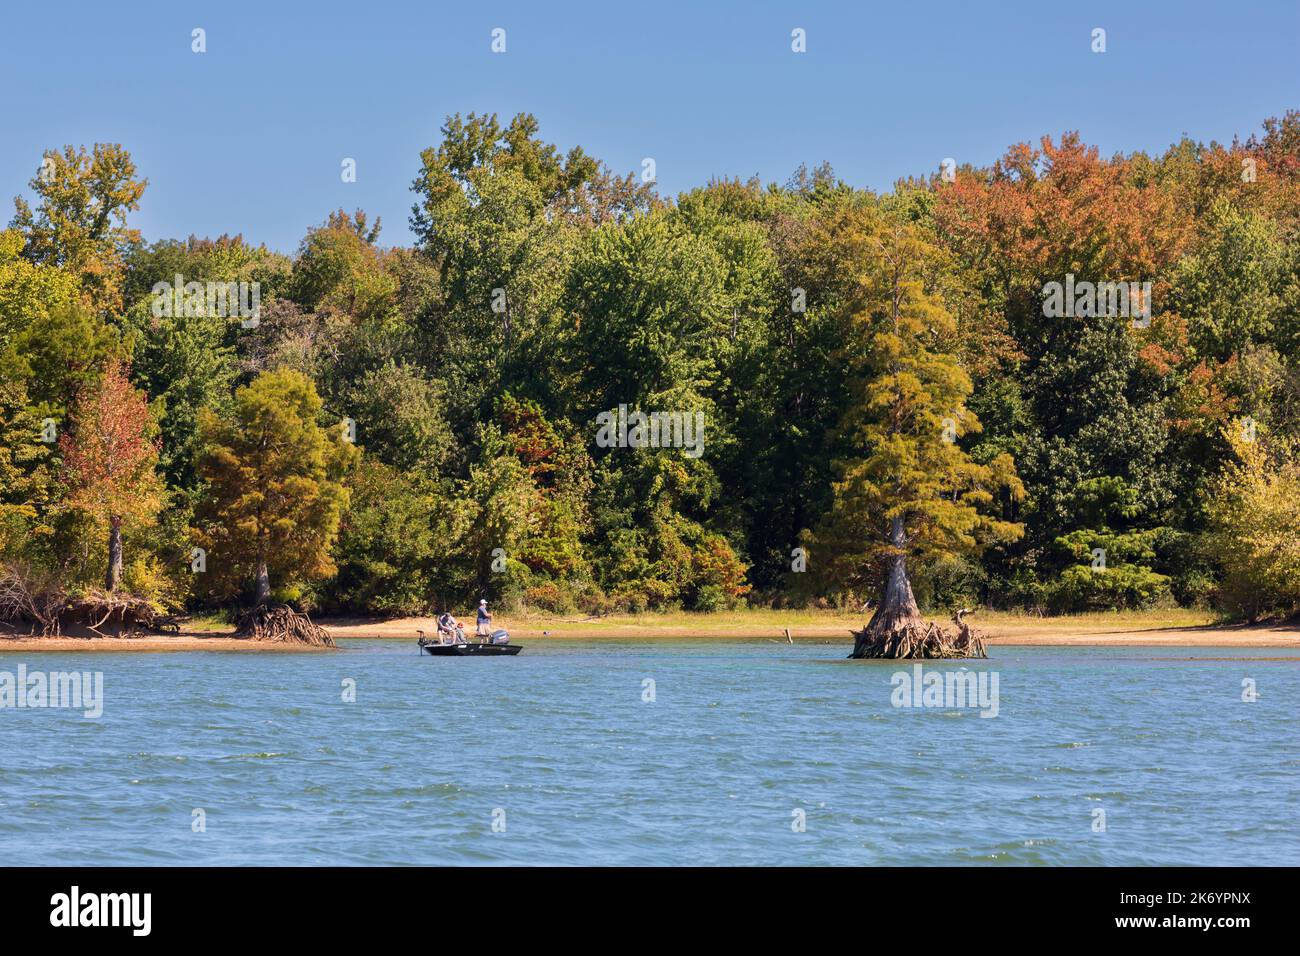 Trois hommes pêchent à partir d'un petit bateau sur le lac Kentucky au début de l'automne. Les feuilles commencent à changer de couleur début octobre. Banque D'Images